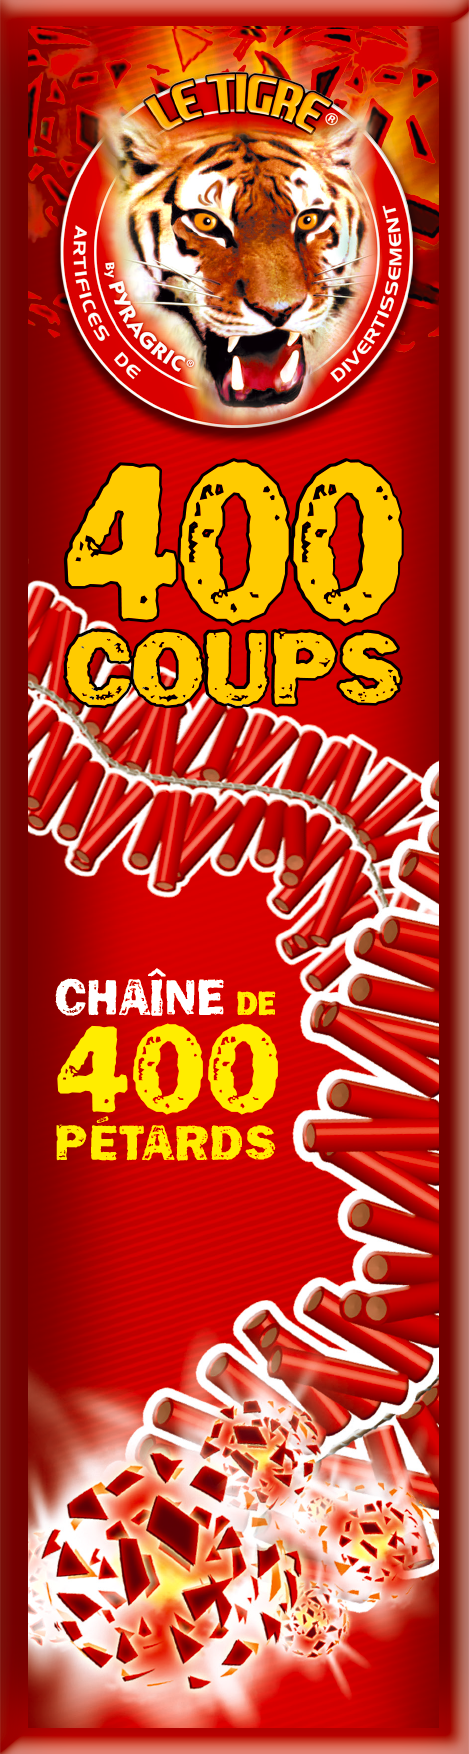 P040002-LE TIGRE 400 COUPS